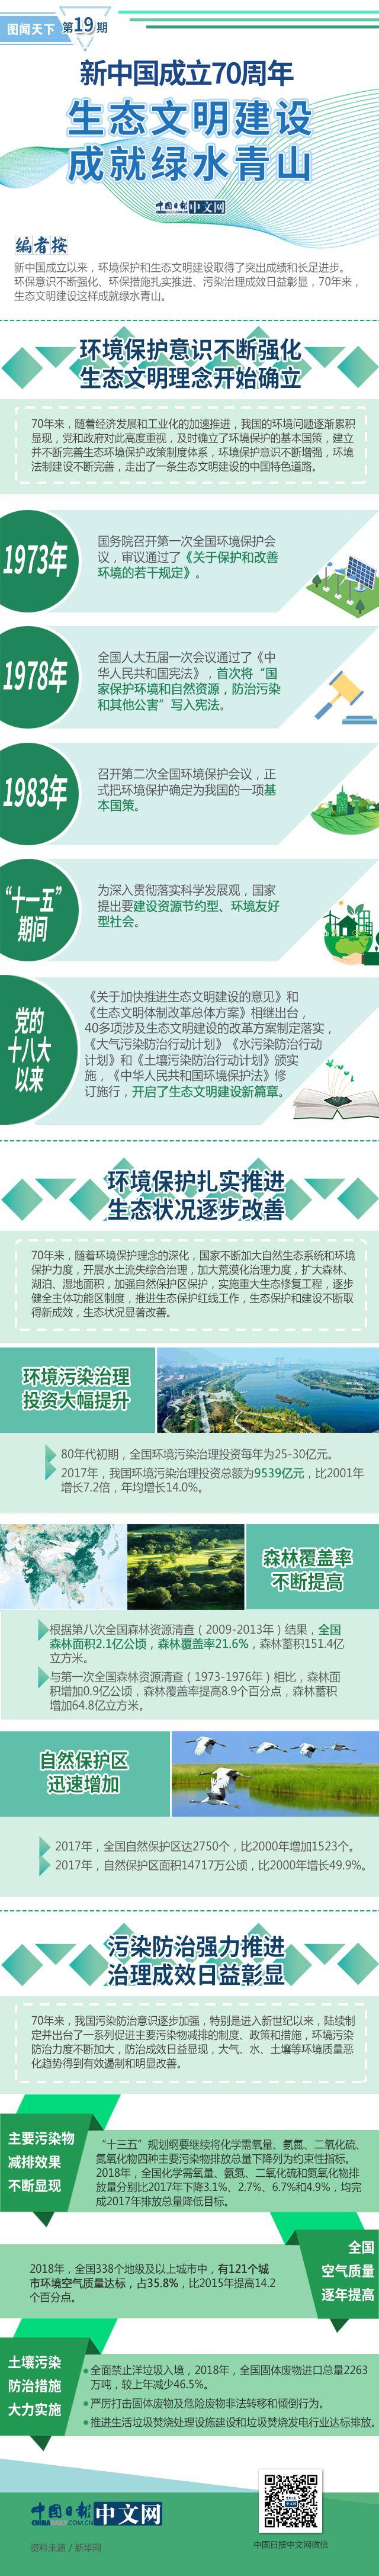 图解丨新中国成立70周年 生态文明建设成就绿水青山